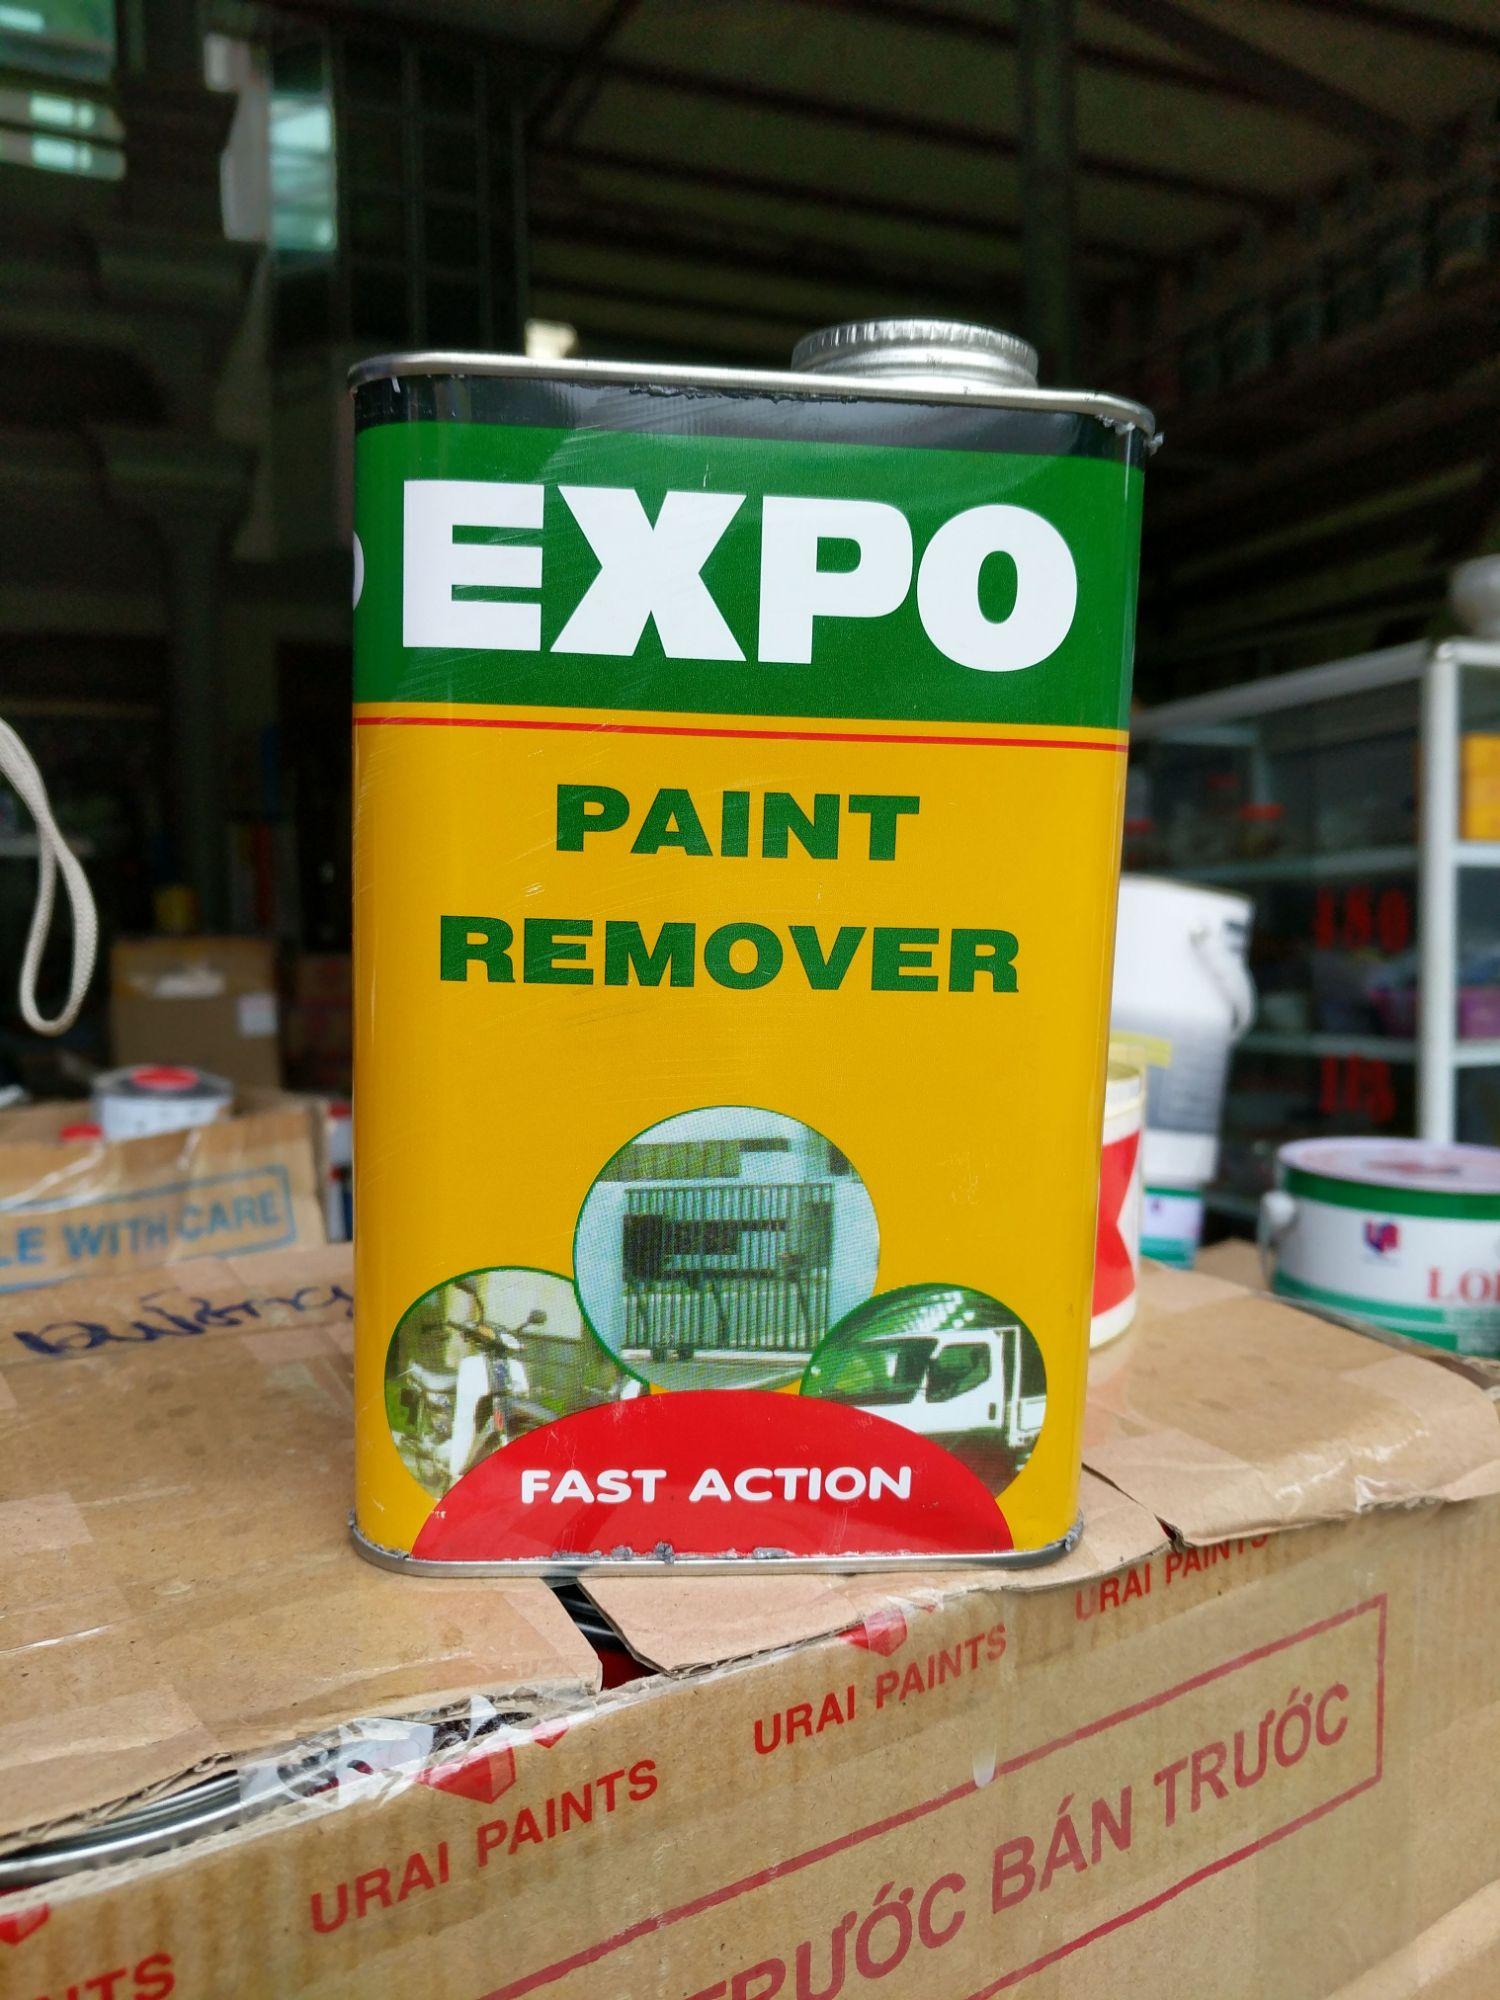 Chất tẩy sơn cực mạnh Expo sẽ giới thiệu đến bạn những sản phẩm chất lượng cao nhất trong lĩnh vực tẩy sơn với khả năng làm sạch cực mạnh. Hãy tìm hiểu và lựa chọn sản phẩm phù hợp nhất cho bạn.